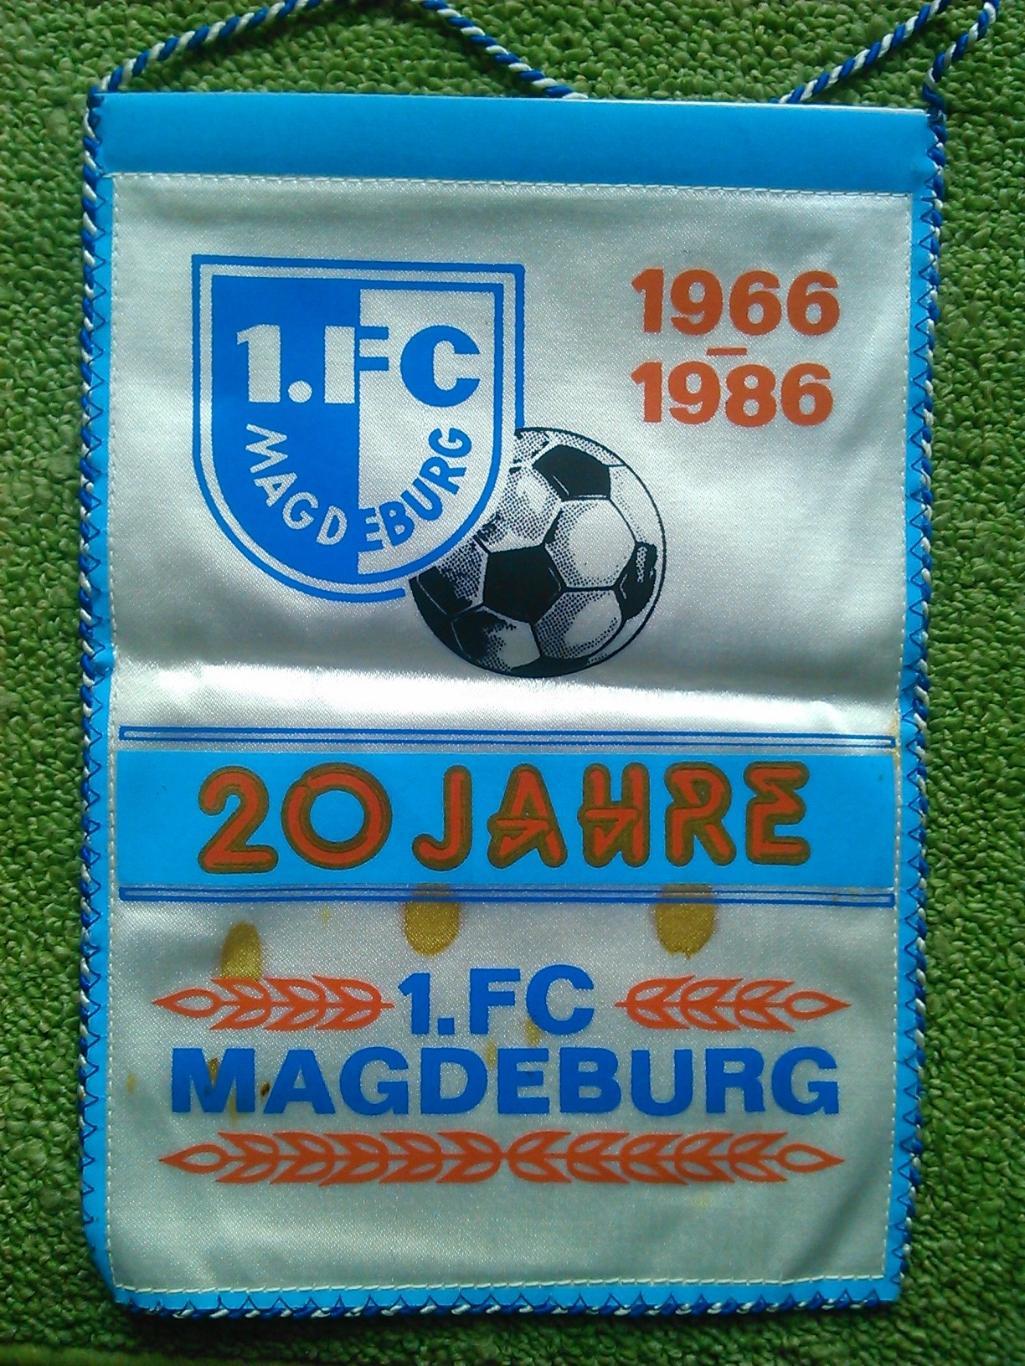 Вимпел 1.FC MAGDEDURG 1966-1986. ФК МАГДЕБУРГ 20 лет. Оптом скидки до 44%!